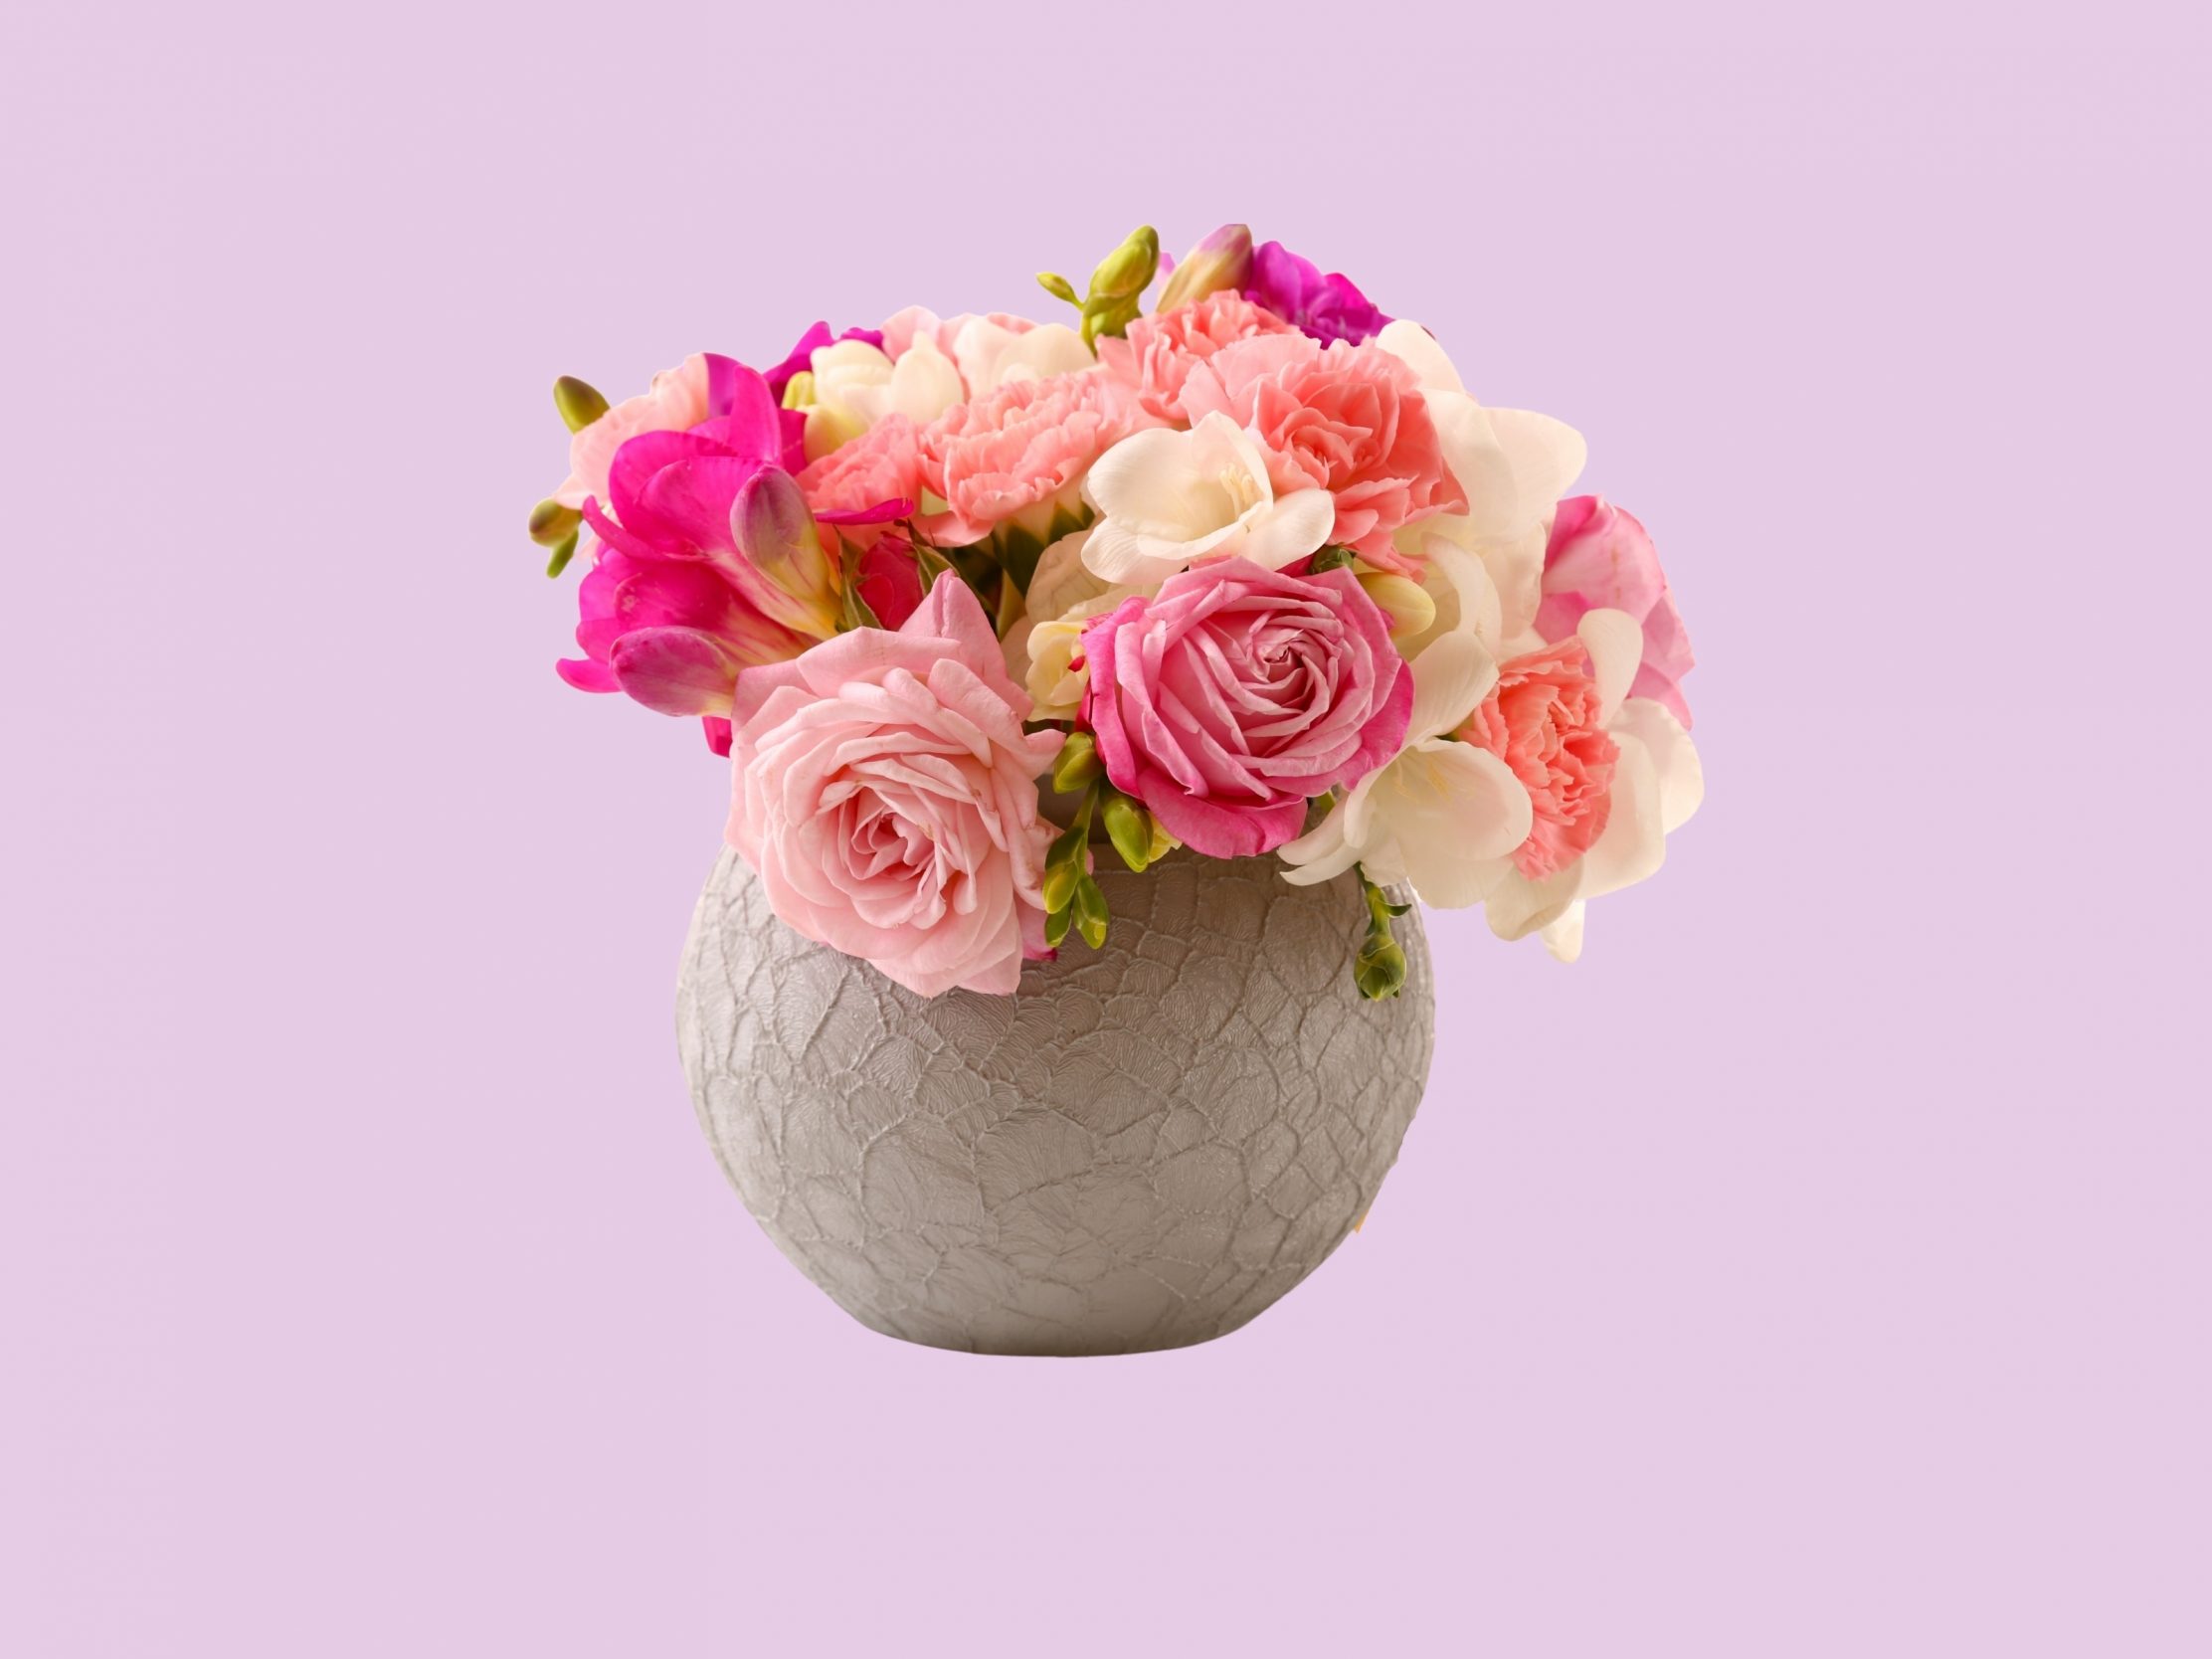 2224x1668 iPad Pro wallpapers Vase Pink Roses Floral Pot iPad Wallpaper 2224x1668 pixels resolution